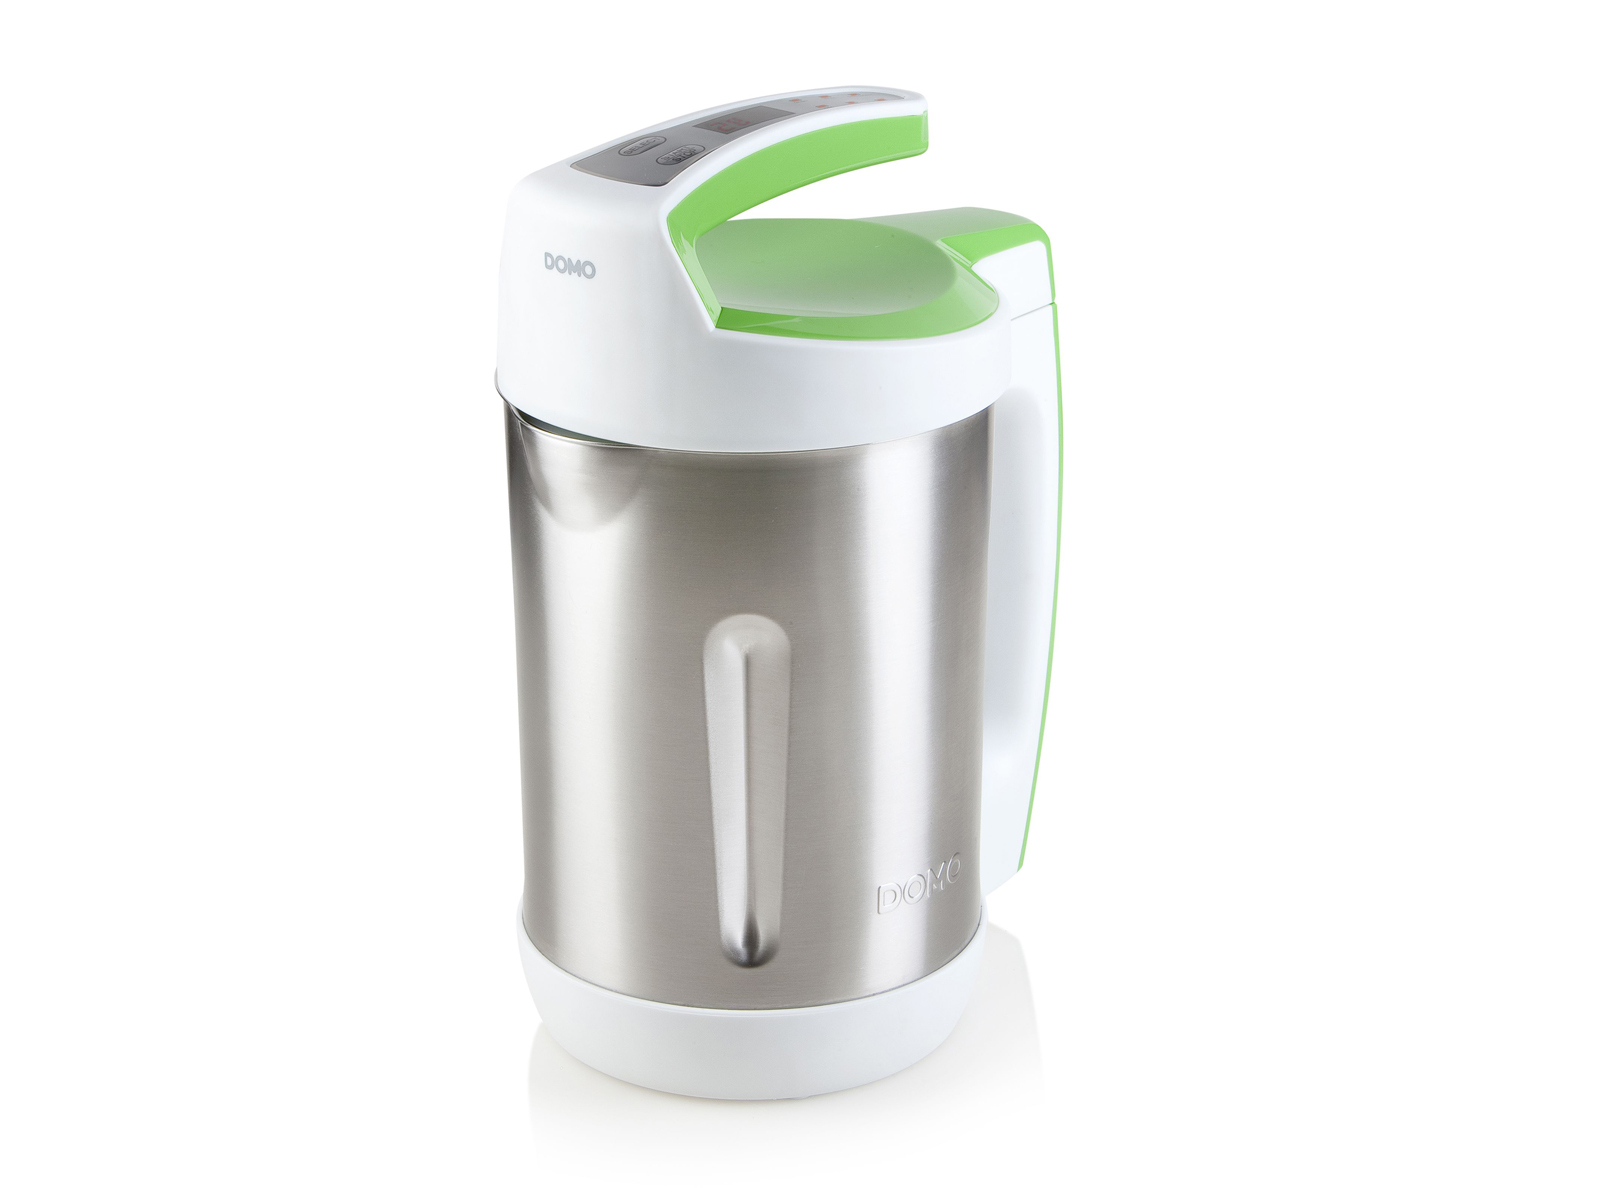 Suppenkocher DOMO Küchenmaschine Silber-Weiß-Grün Liter) (1000 2 Watt,